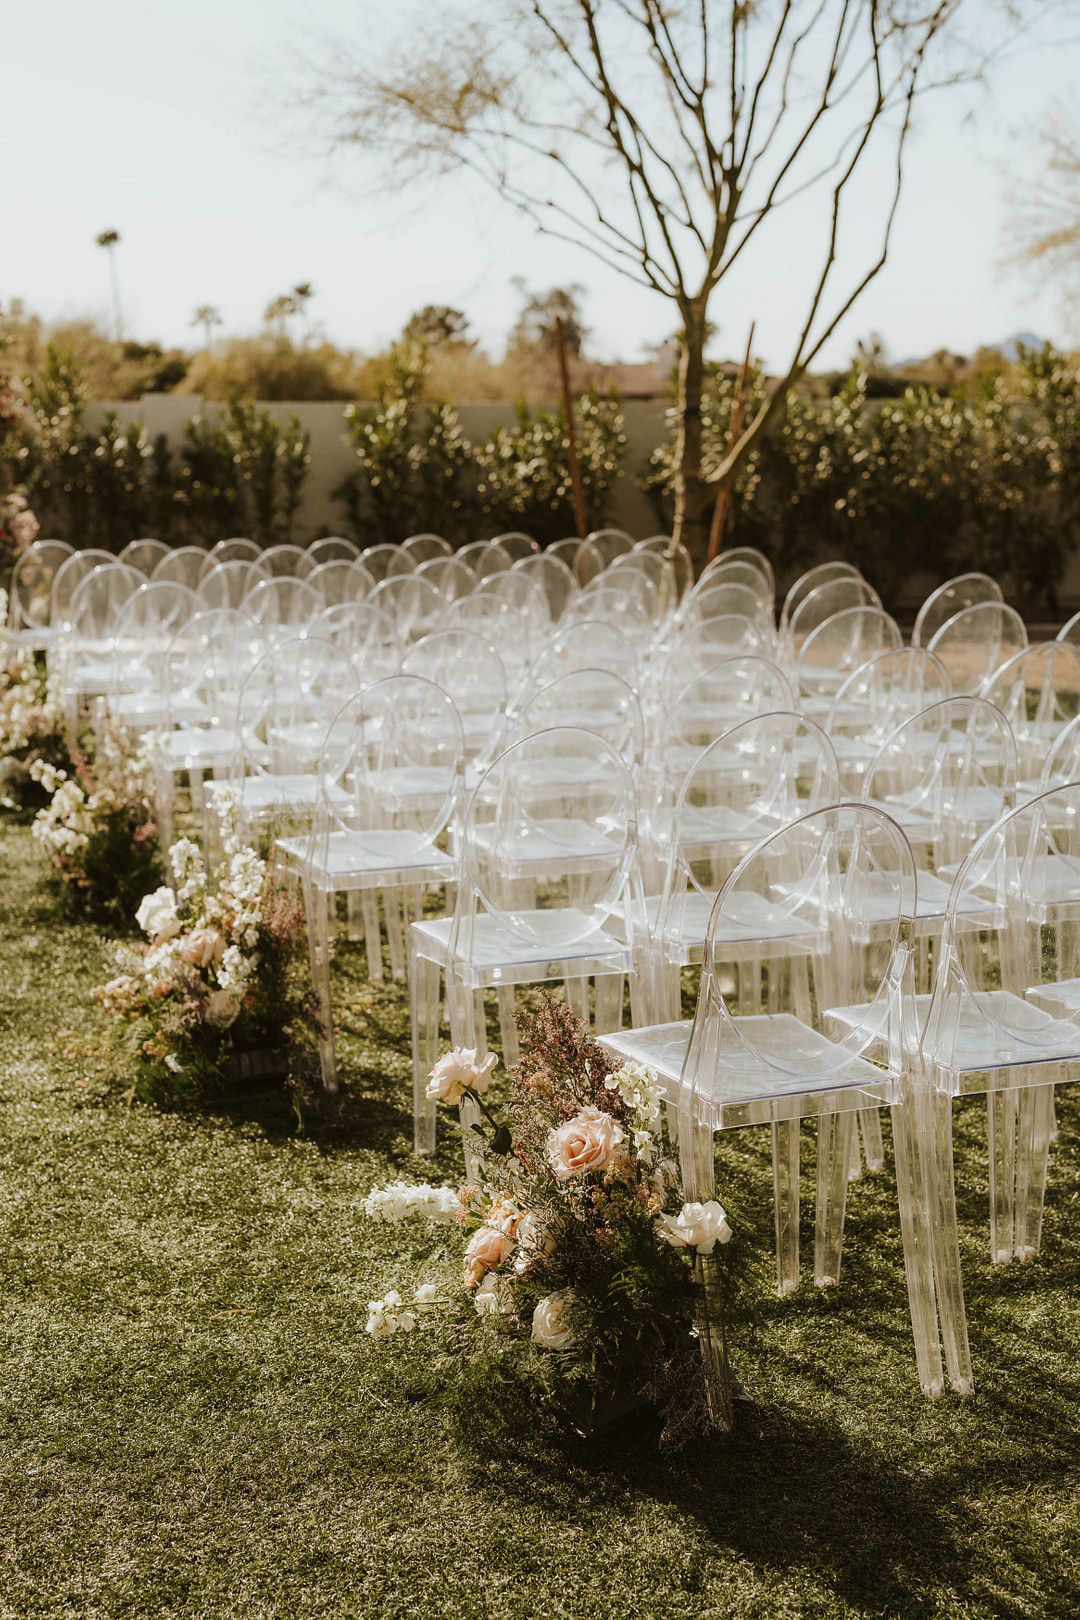 Transparente Stühle zur Trauung legen den Fokus auf die Blumen